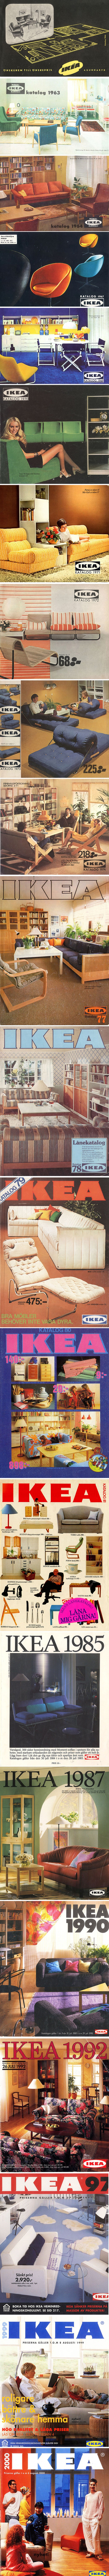 Stari IKEA katalozi pokazuju kako je nekada izgledao savršen dom 